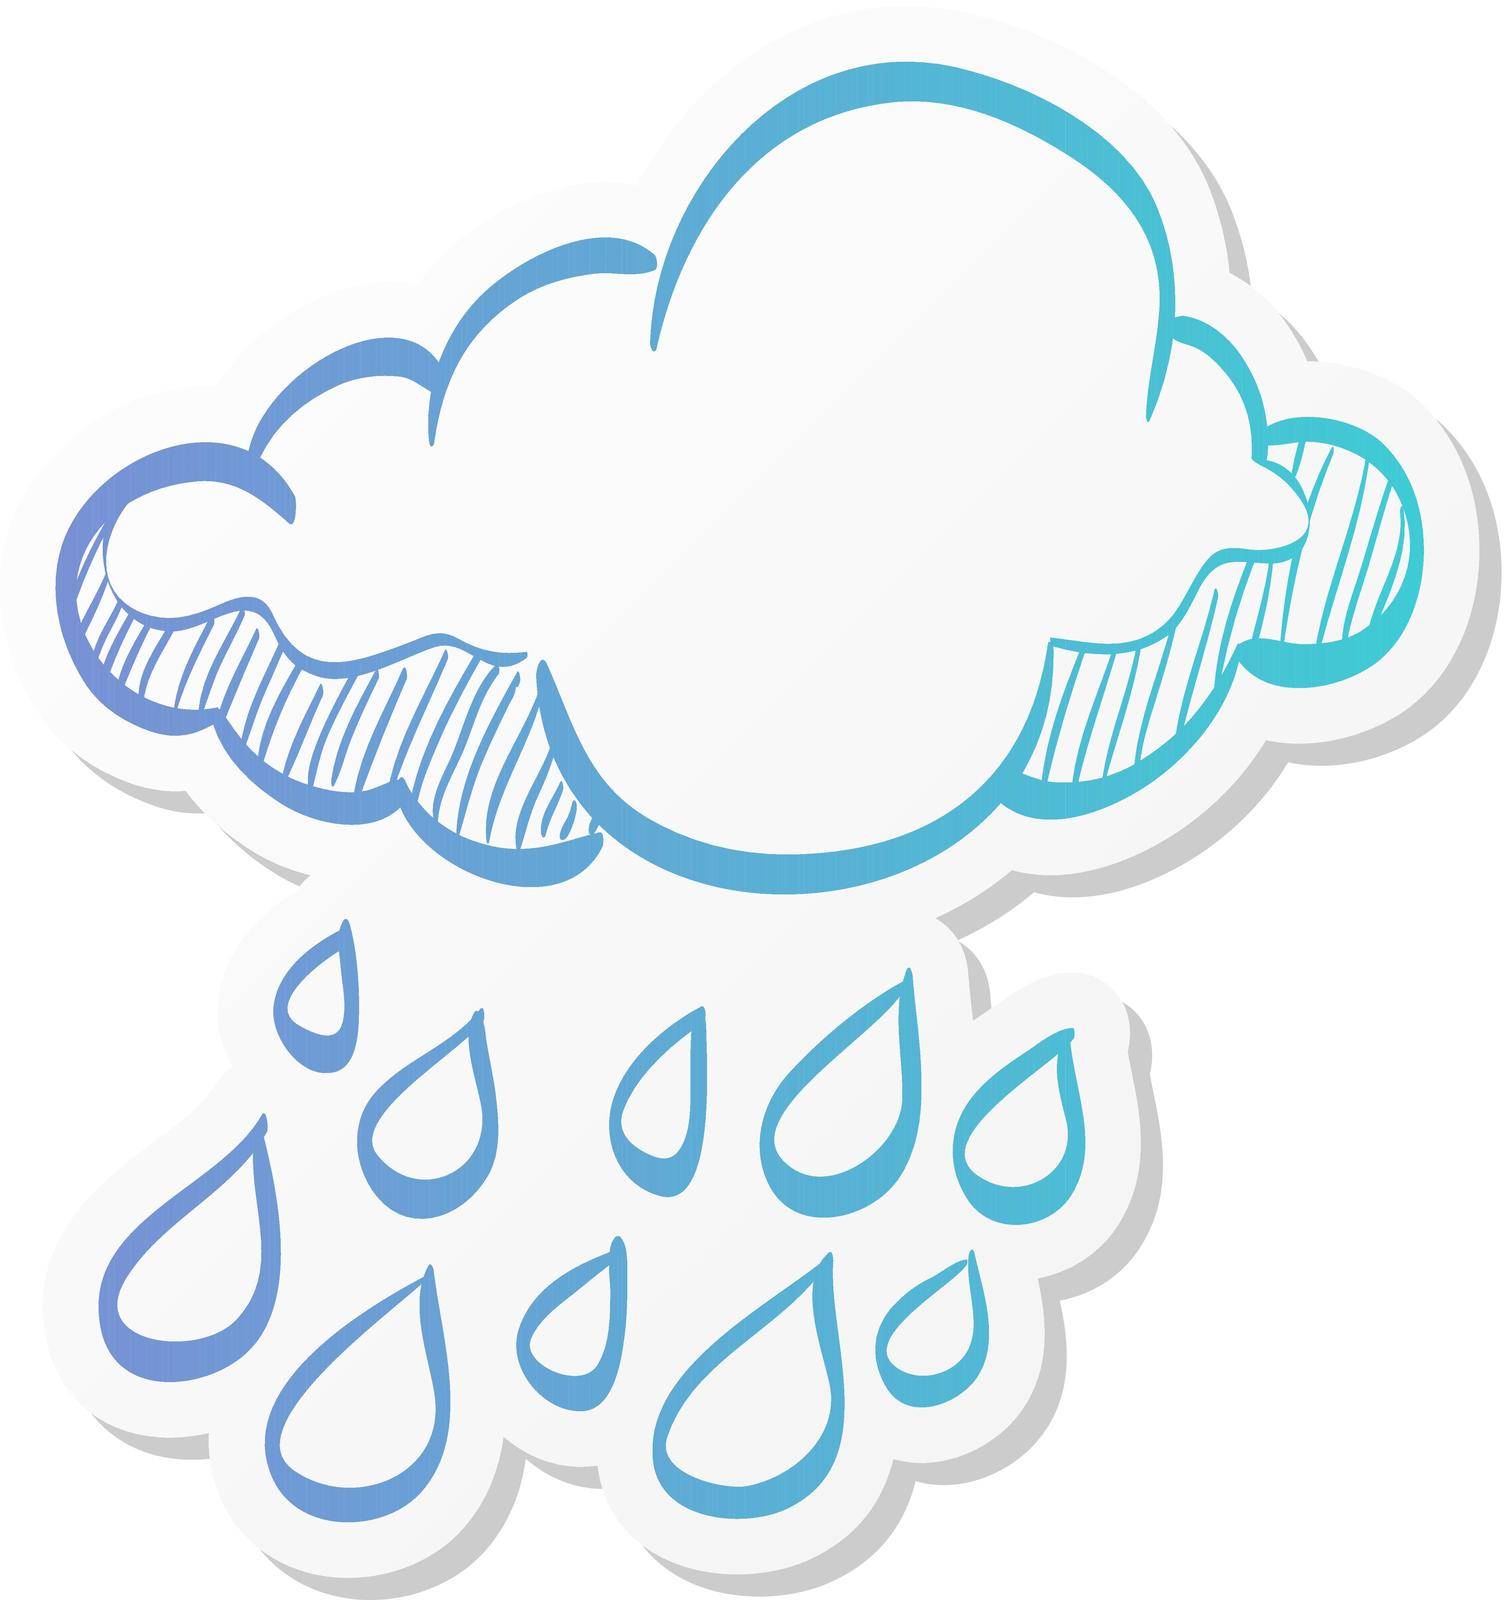 Rain cloud icon in sticker color style. Season forecast